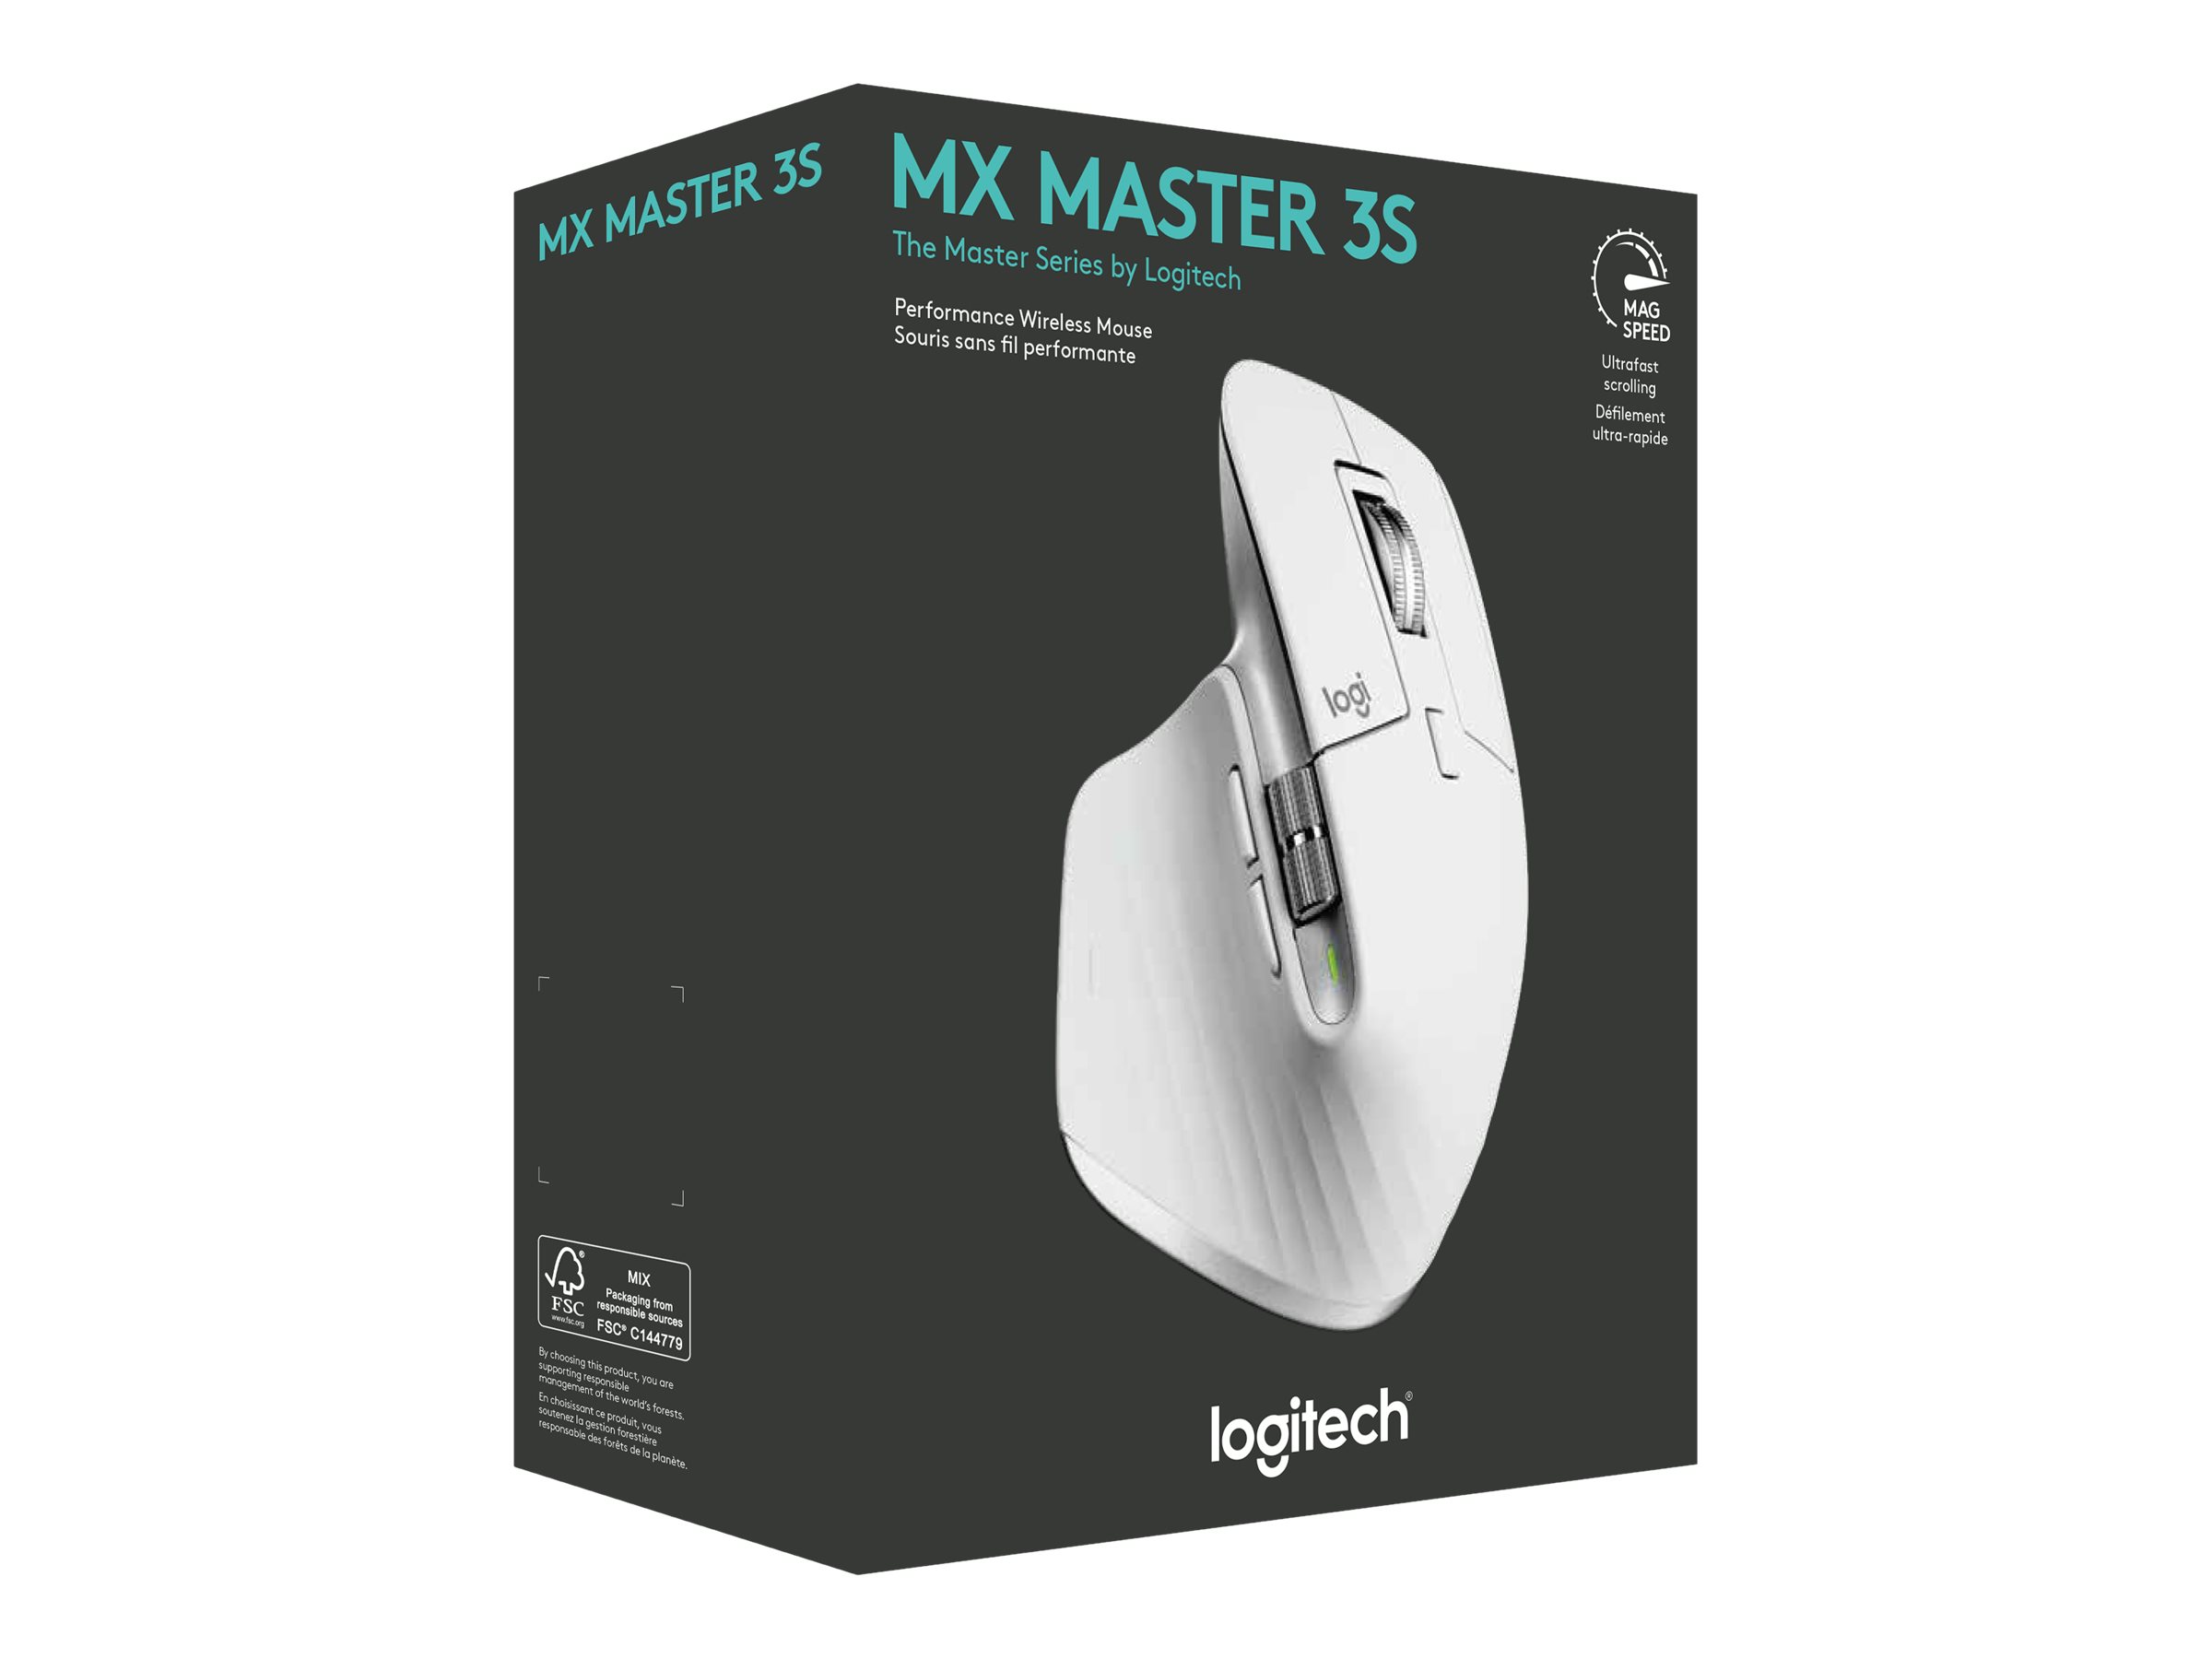 LOGI MX Master 3S Perf Wl Mouse P GREY, Logitech MX, Master, 3S